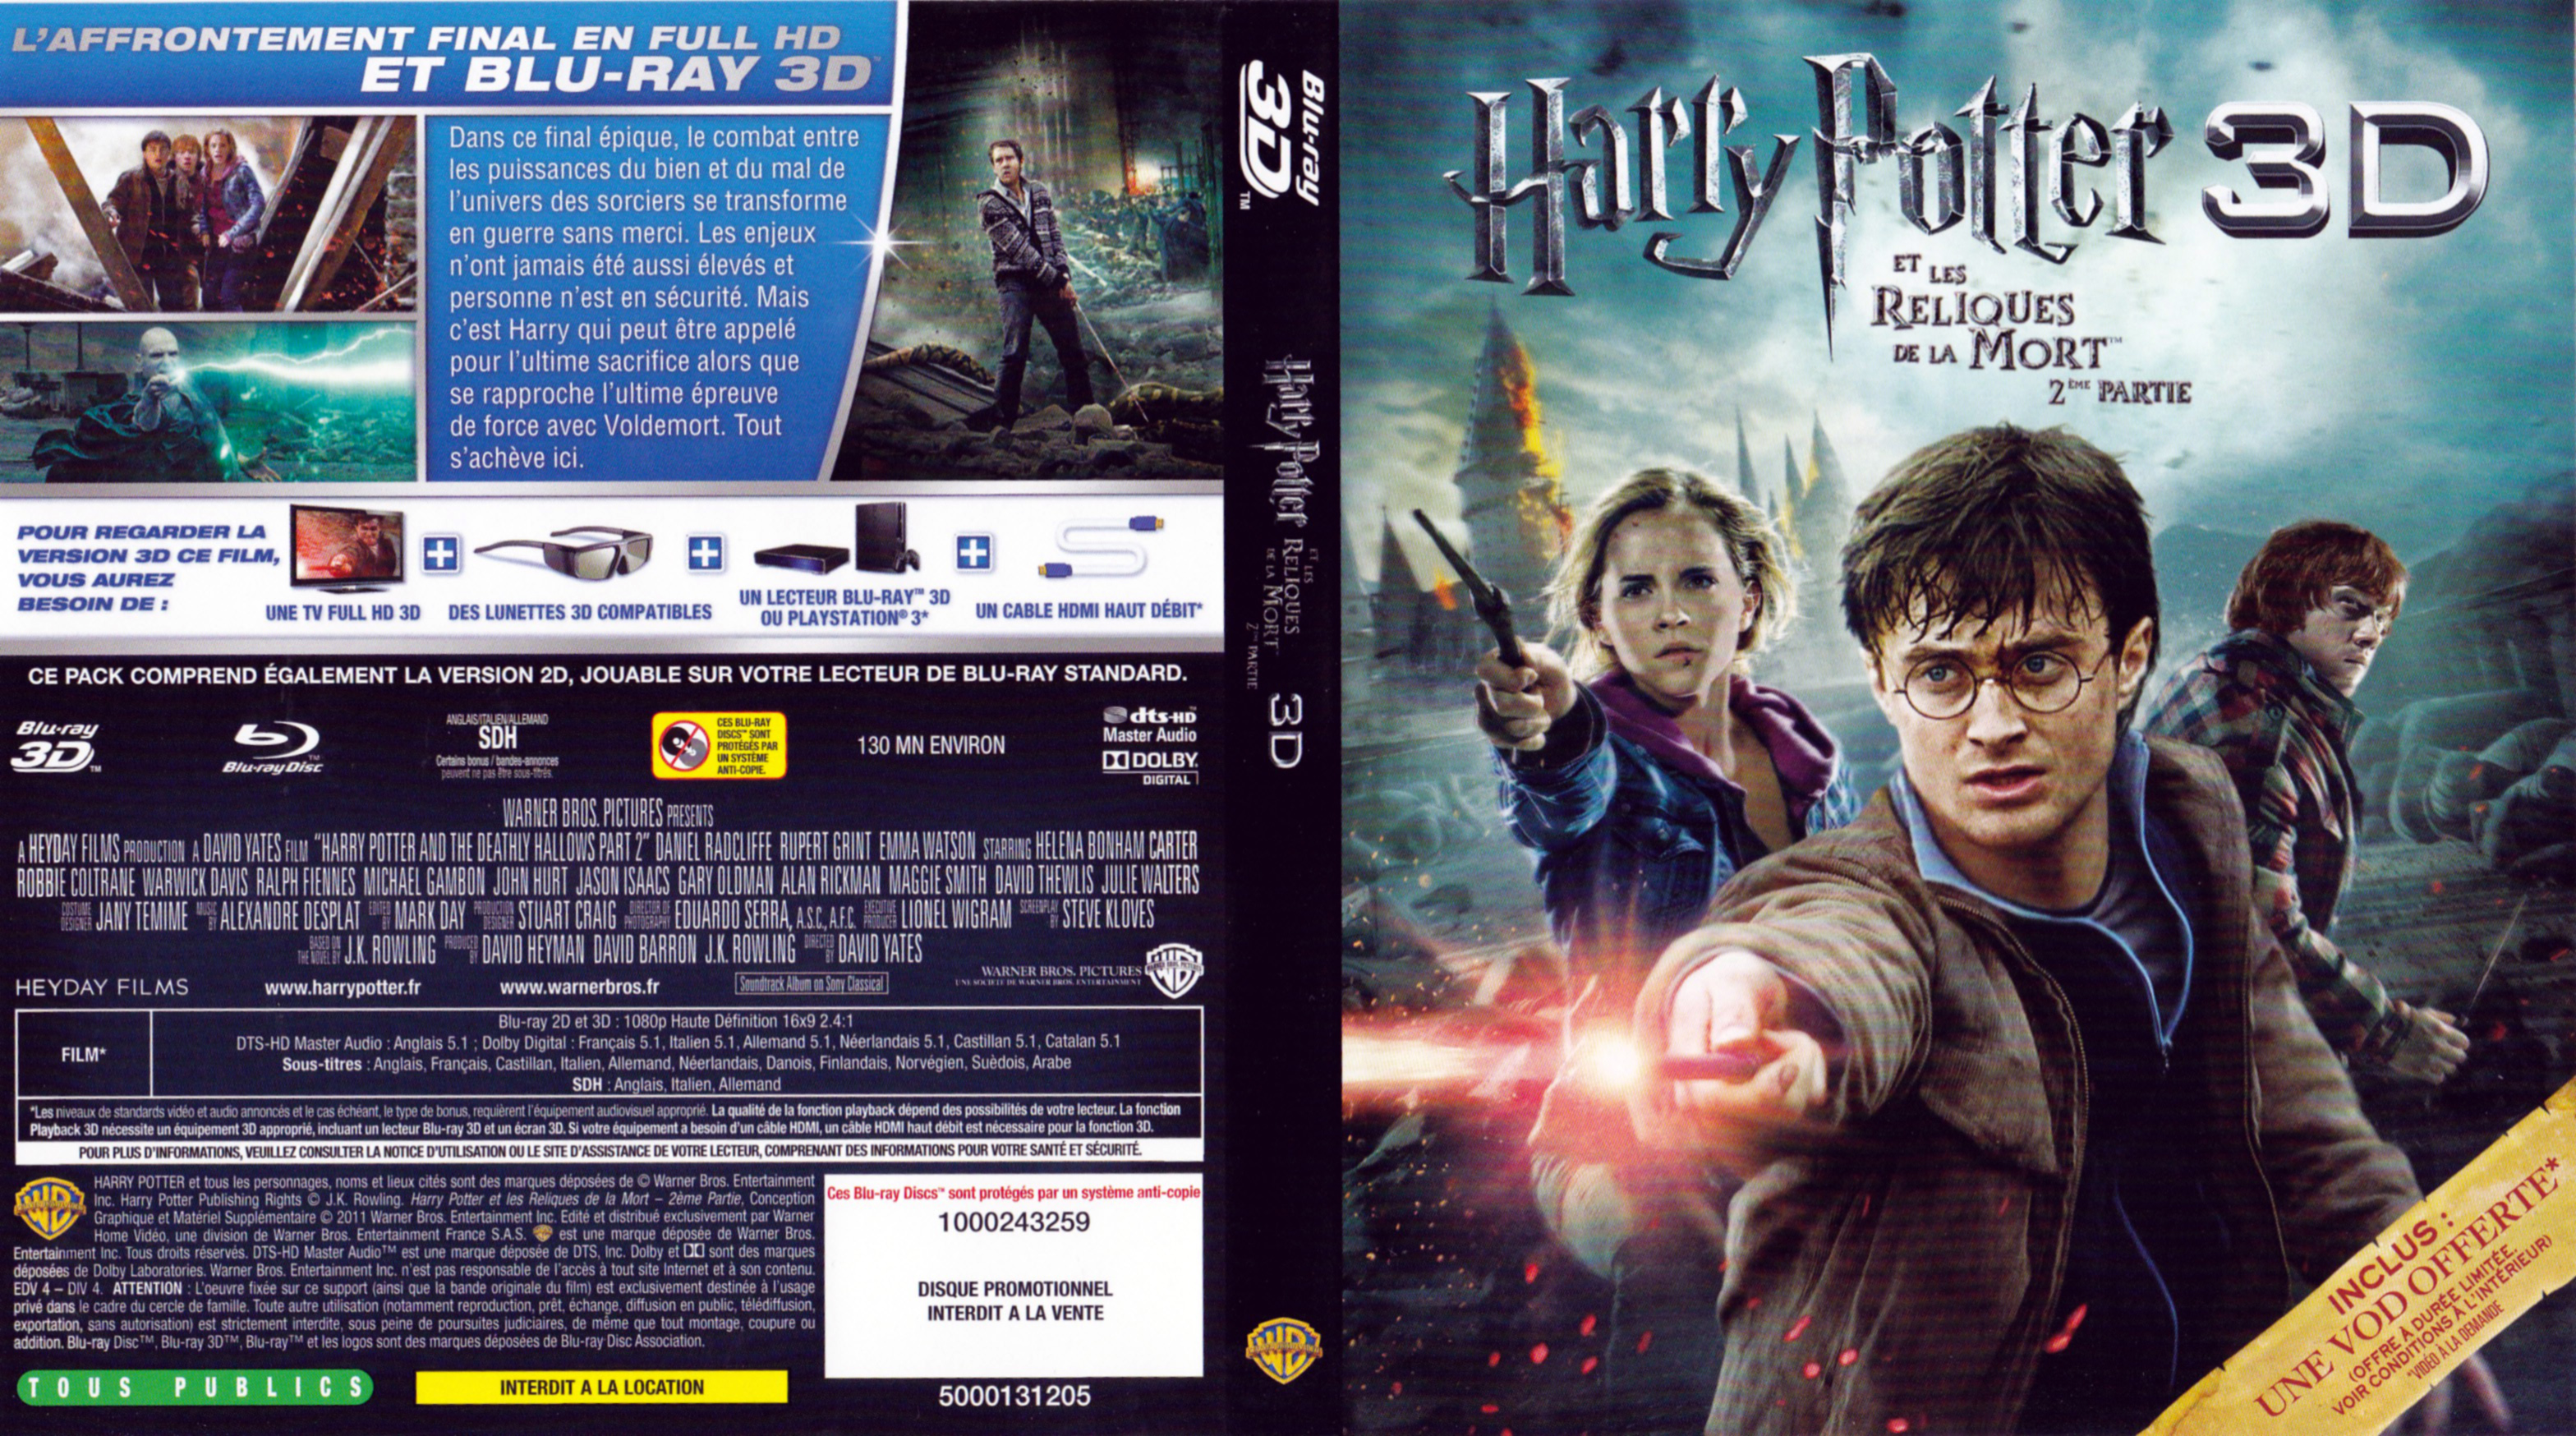 Jaquette DVD Harry Potter et les reliques de la mort - 2me partie 3D (BLU-RAY)